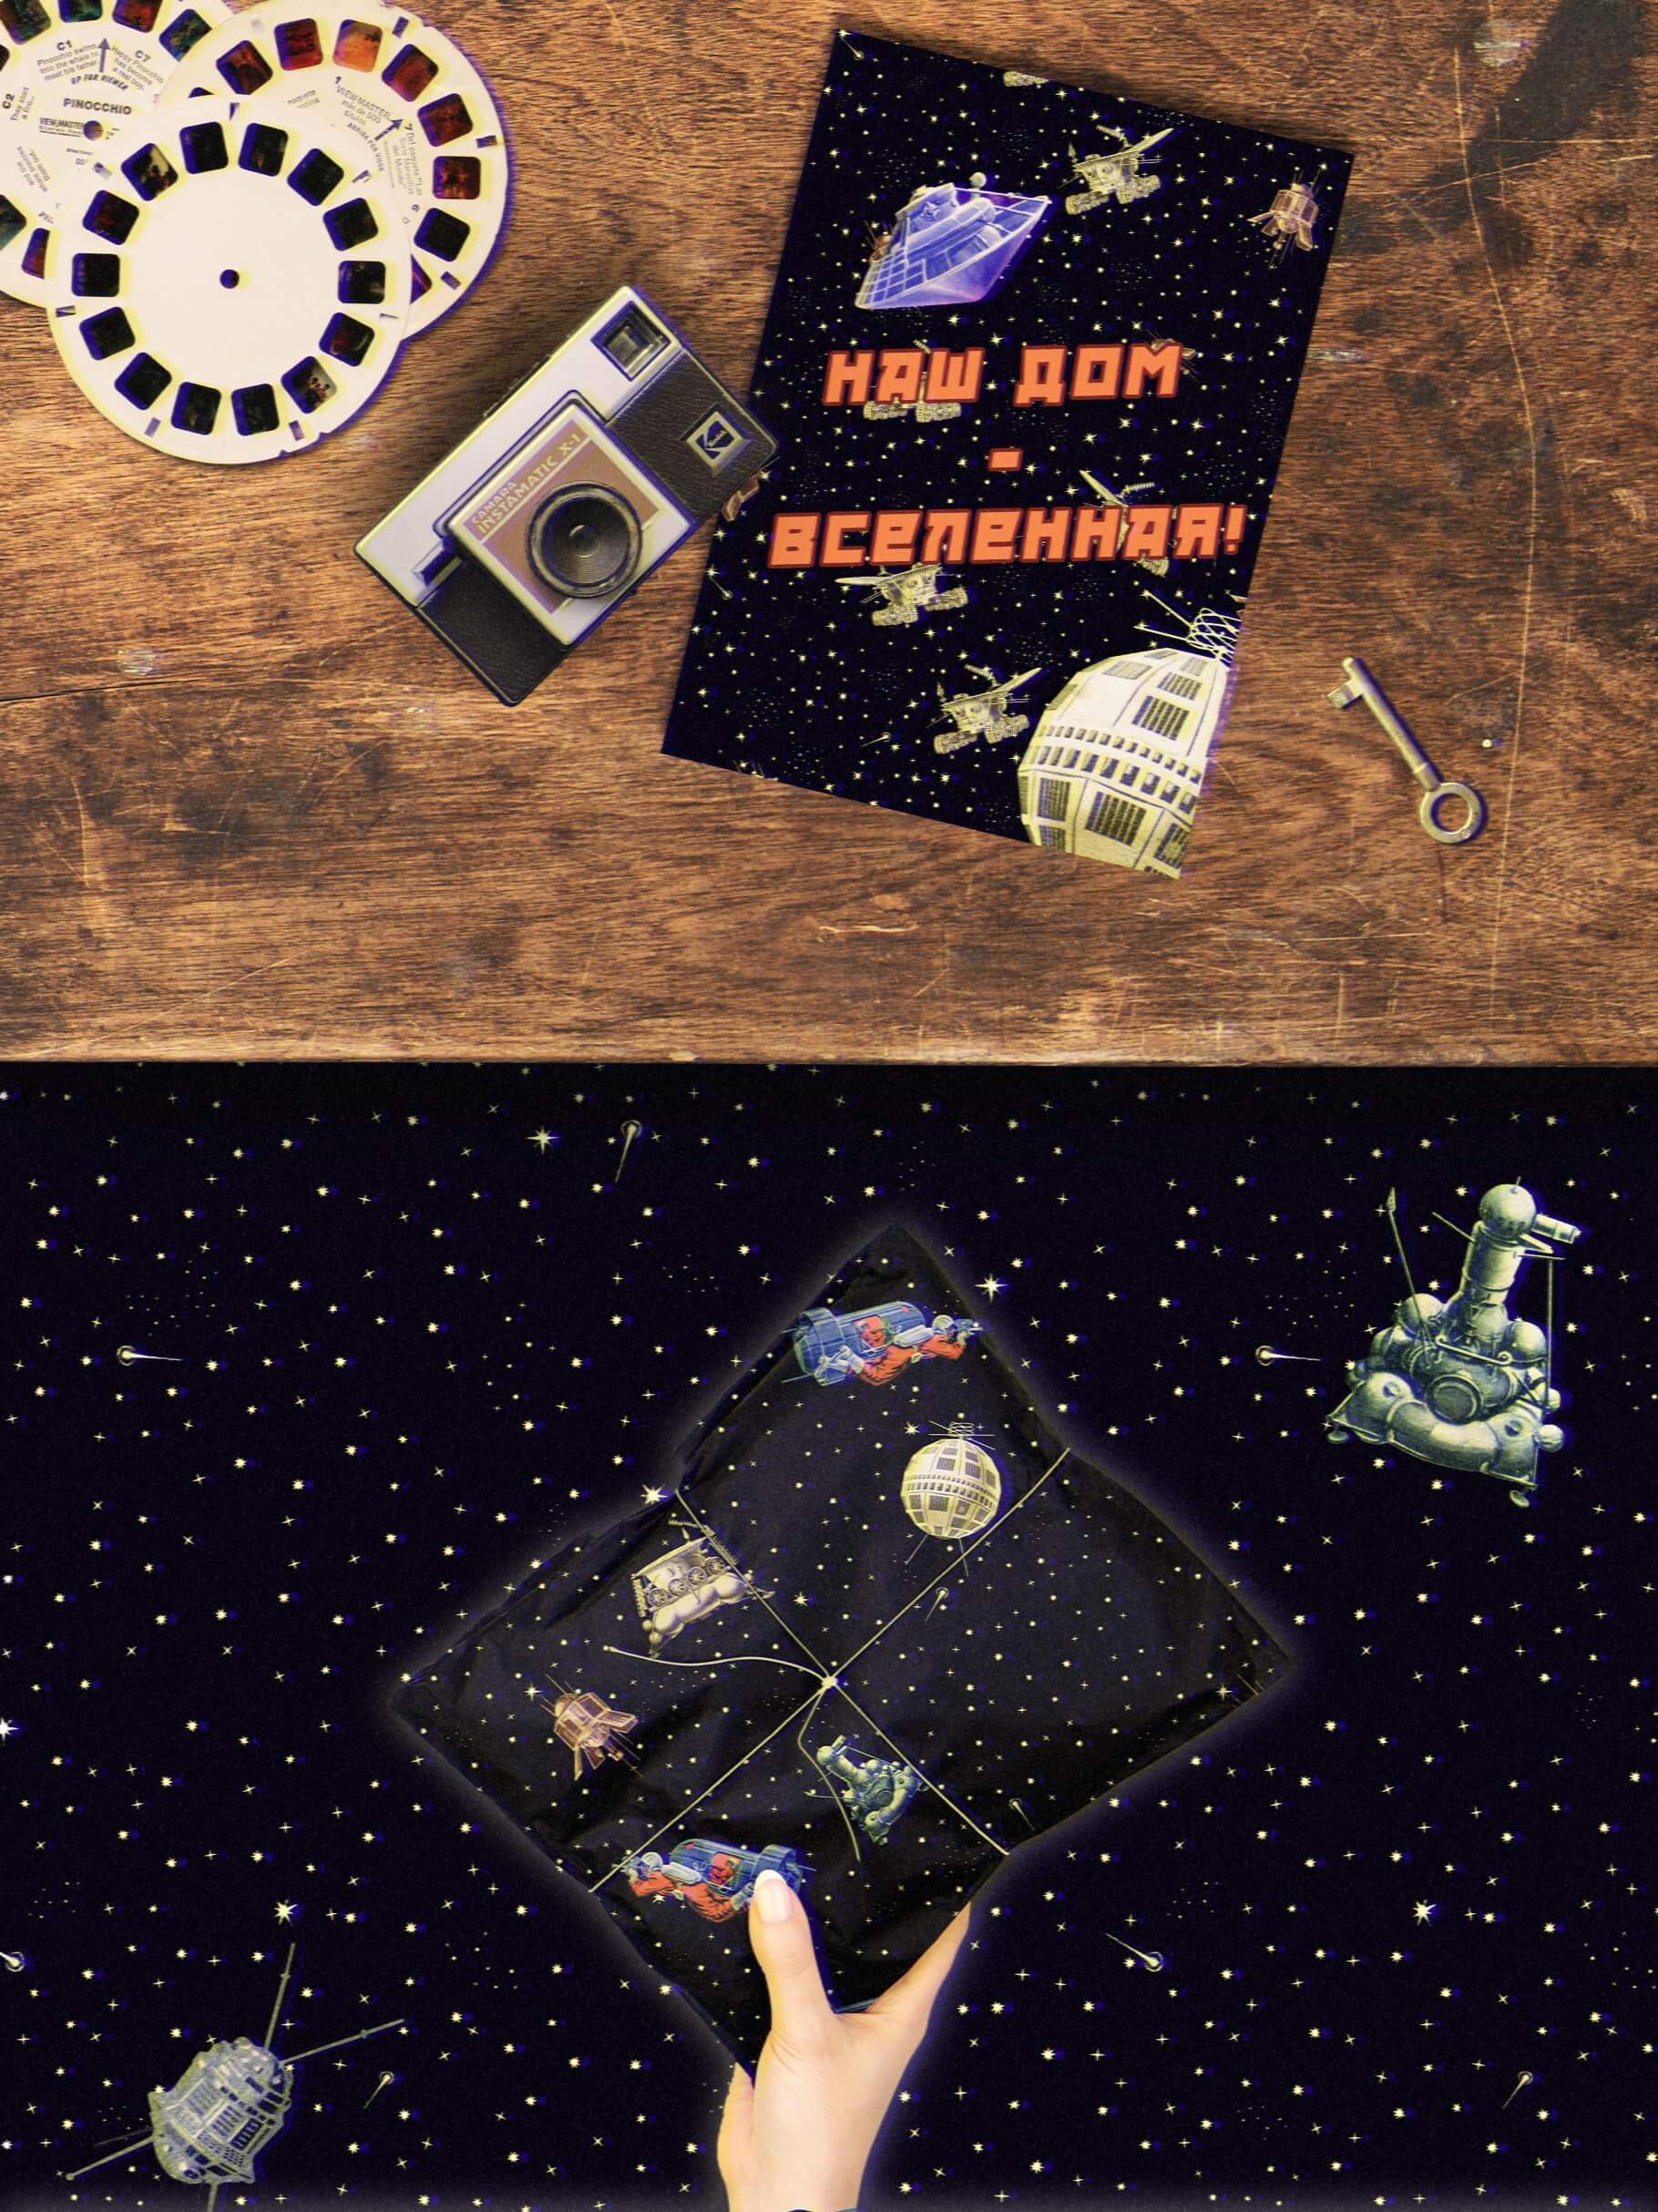 苏联启发复古宇航员太空外星UFO衣服杯子贴纸徽章海报图形元素JPG&PNG素材&Pat图案样式 图片素材 第4张